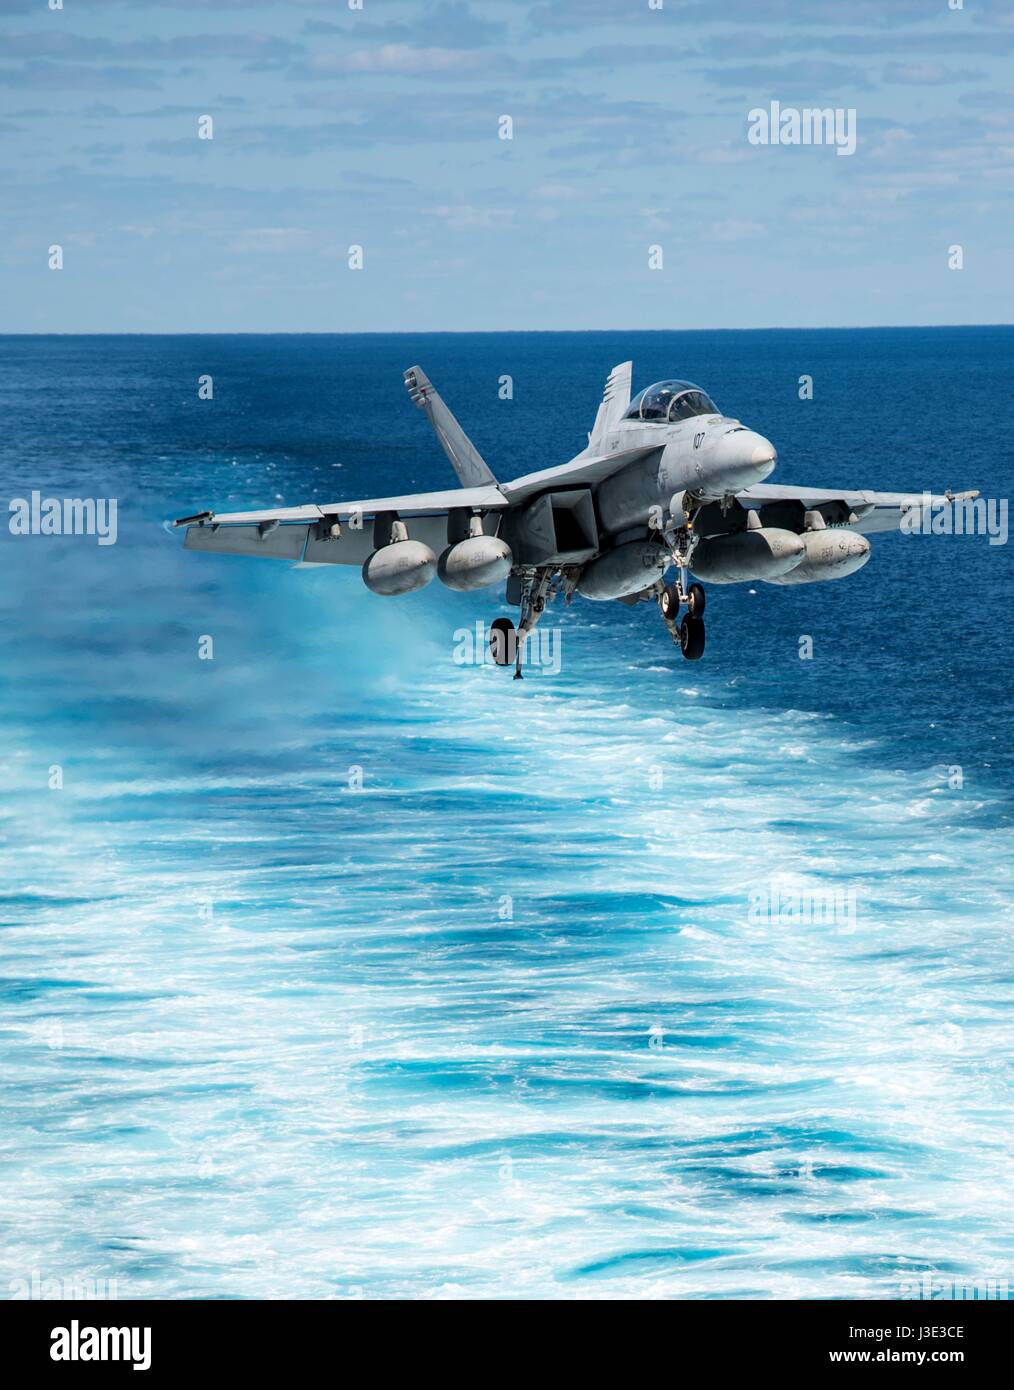 Un USN F/A-18 Super Hornet jet fighter aircraft se prépare à atterrir sur le poste de pilotage à bord de la marine américaine de classe Nimitz porte-avions USS Dwight D. Eisenhower 10 avril 2017 dans l'océan Atlantique. (Photo de la psc3 Nathan T. Beard/Planetpix via l'US Navy) Banque D'Images